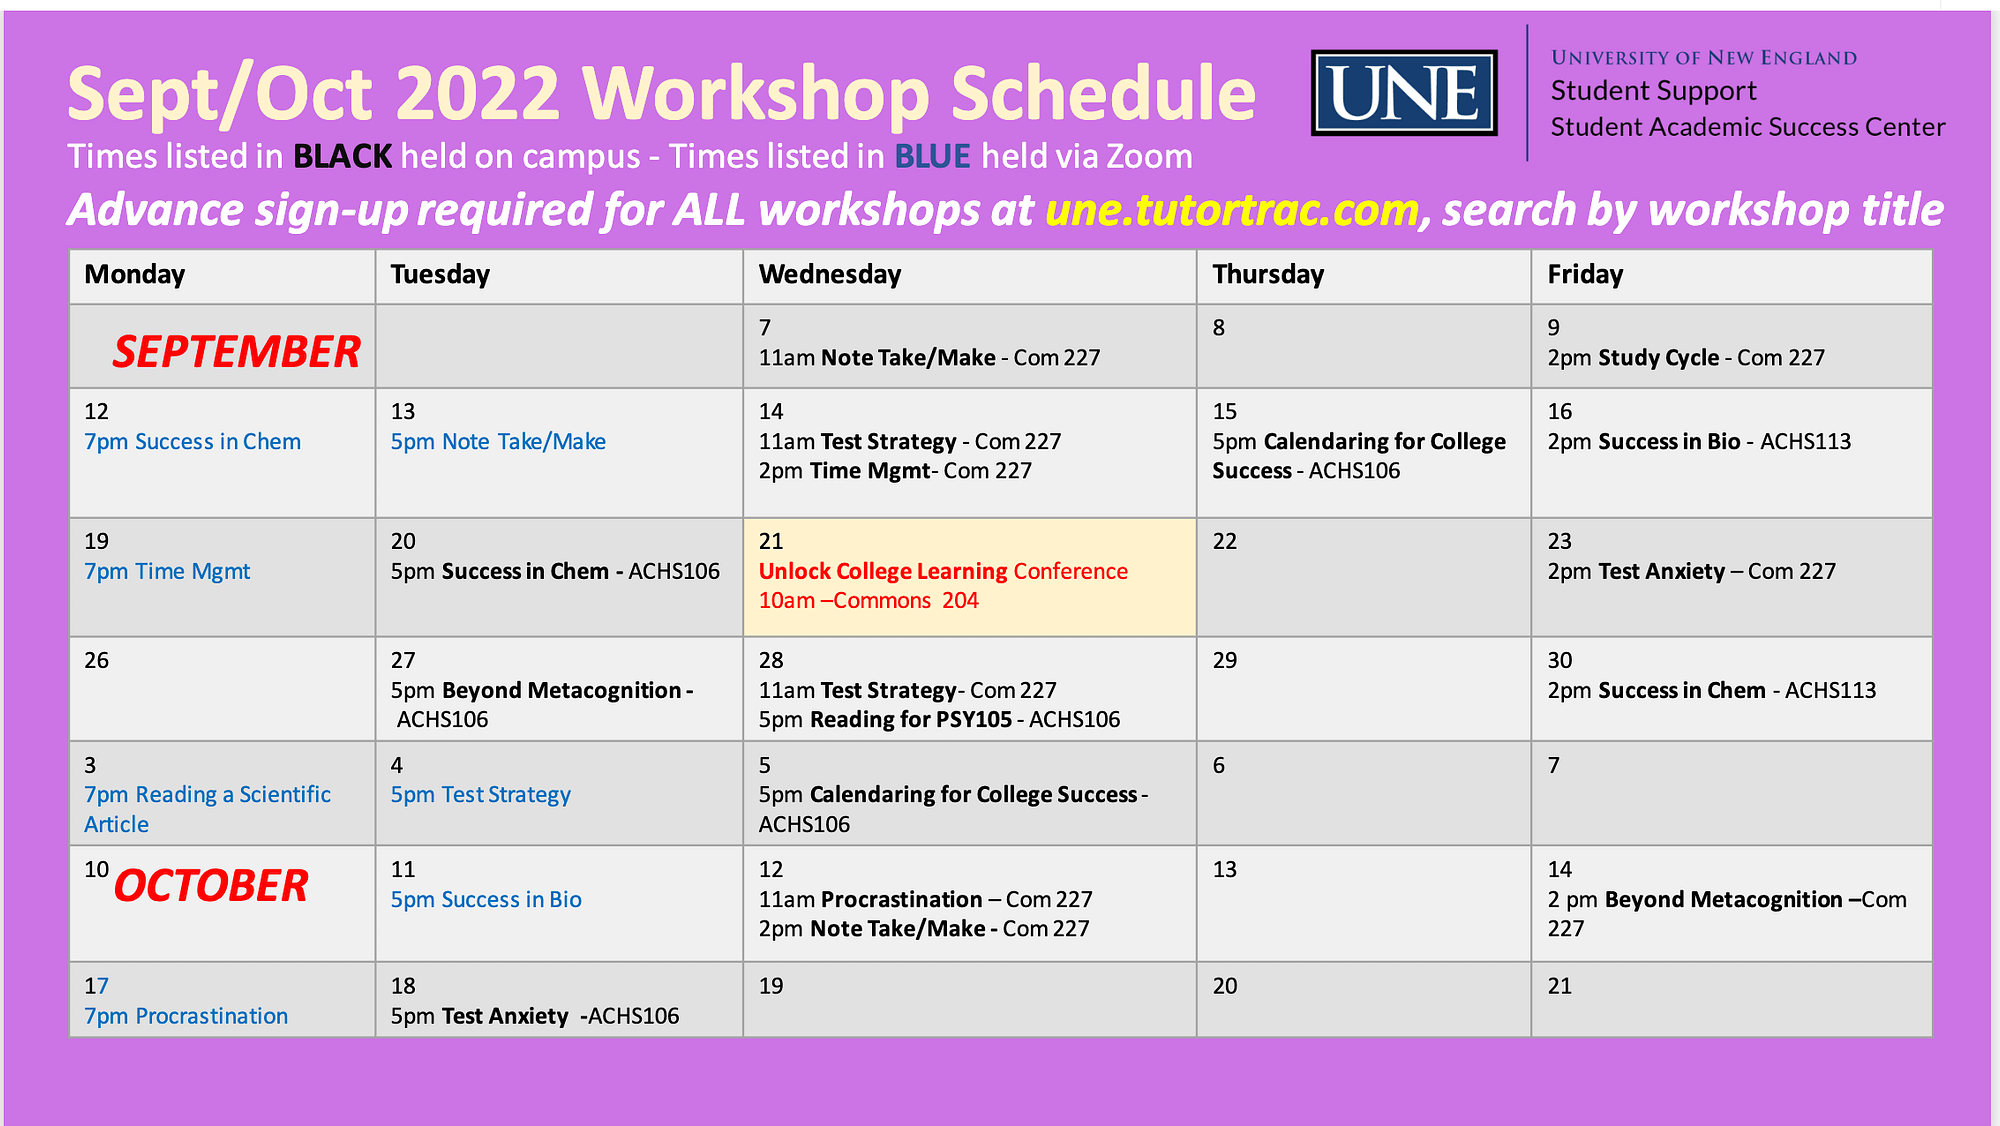 SASC workshop schedule September 2022